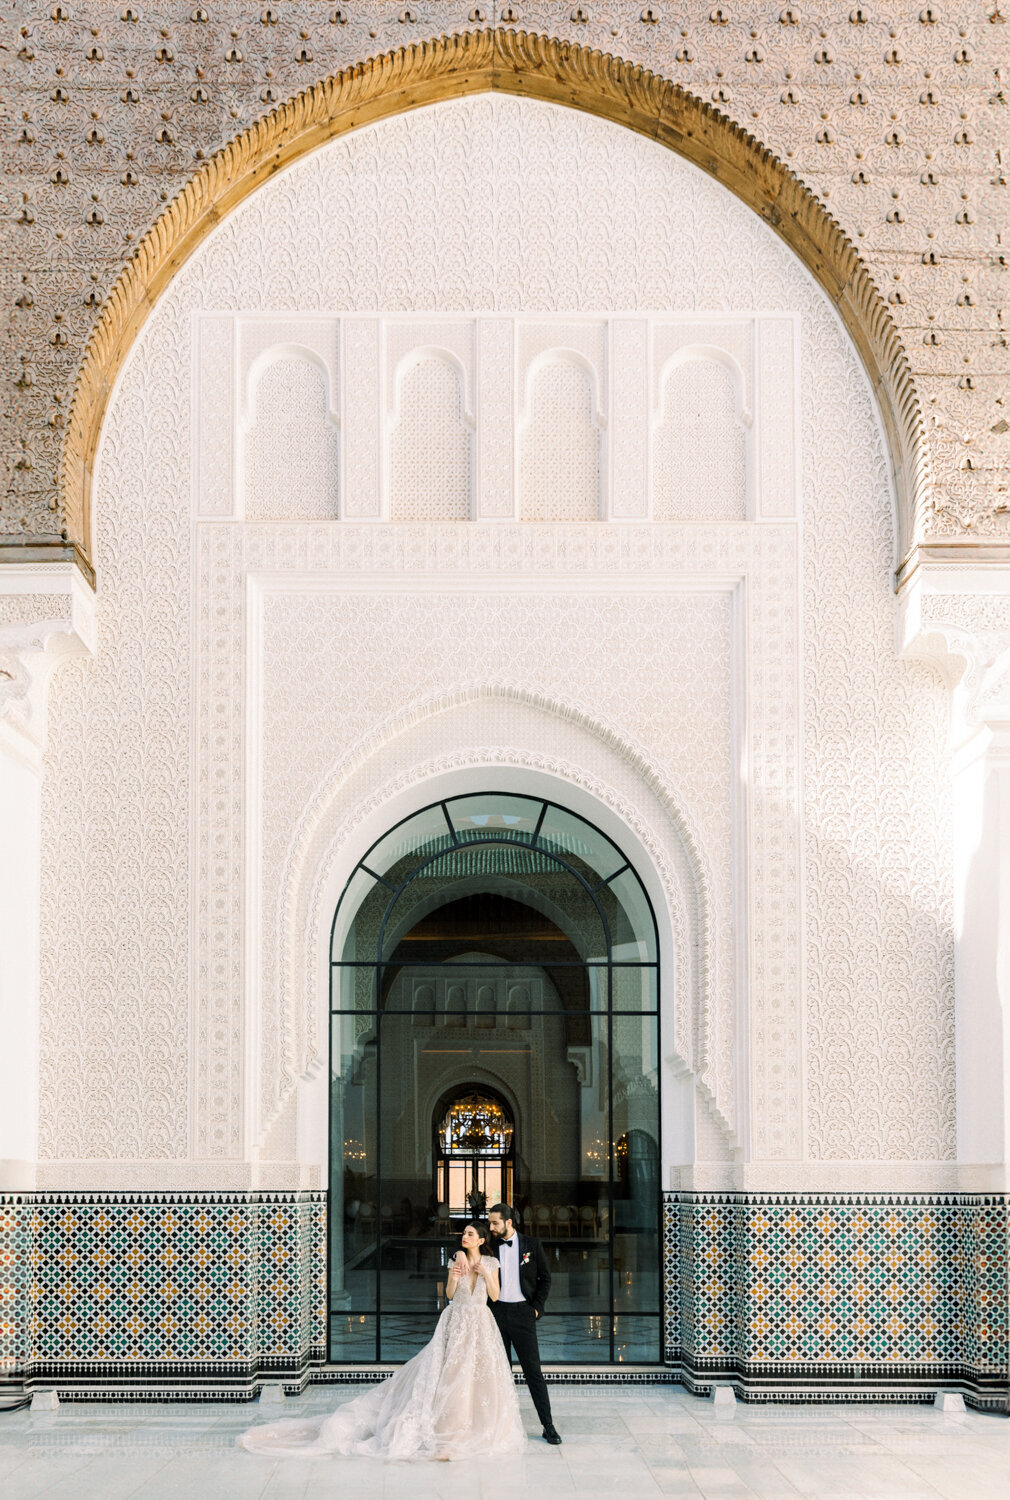 Oberei_Marrakech_Morocco_Wedding_by_Destination_Wedding_Photographer_Diana_Coulter_Website-2